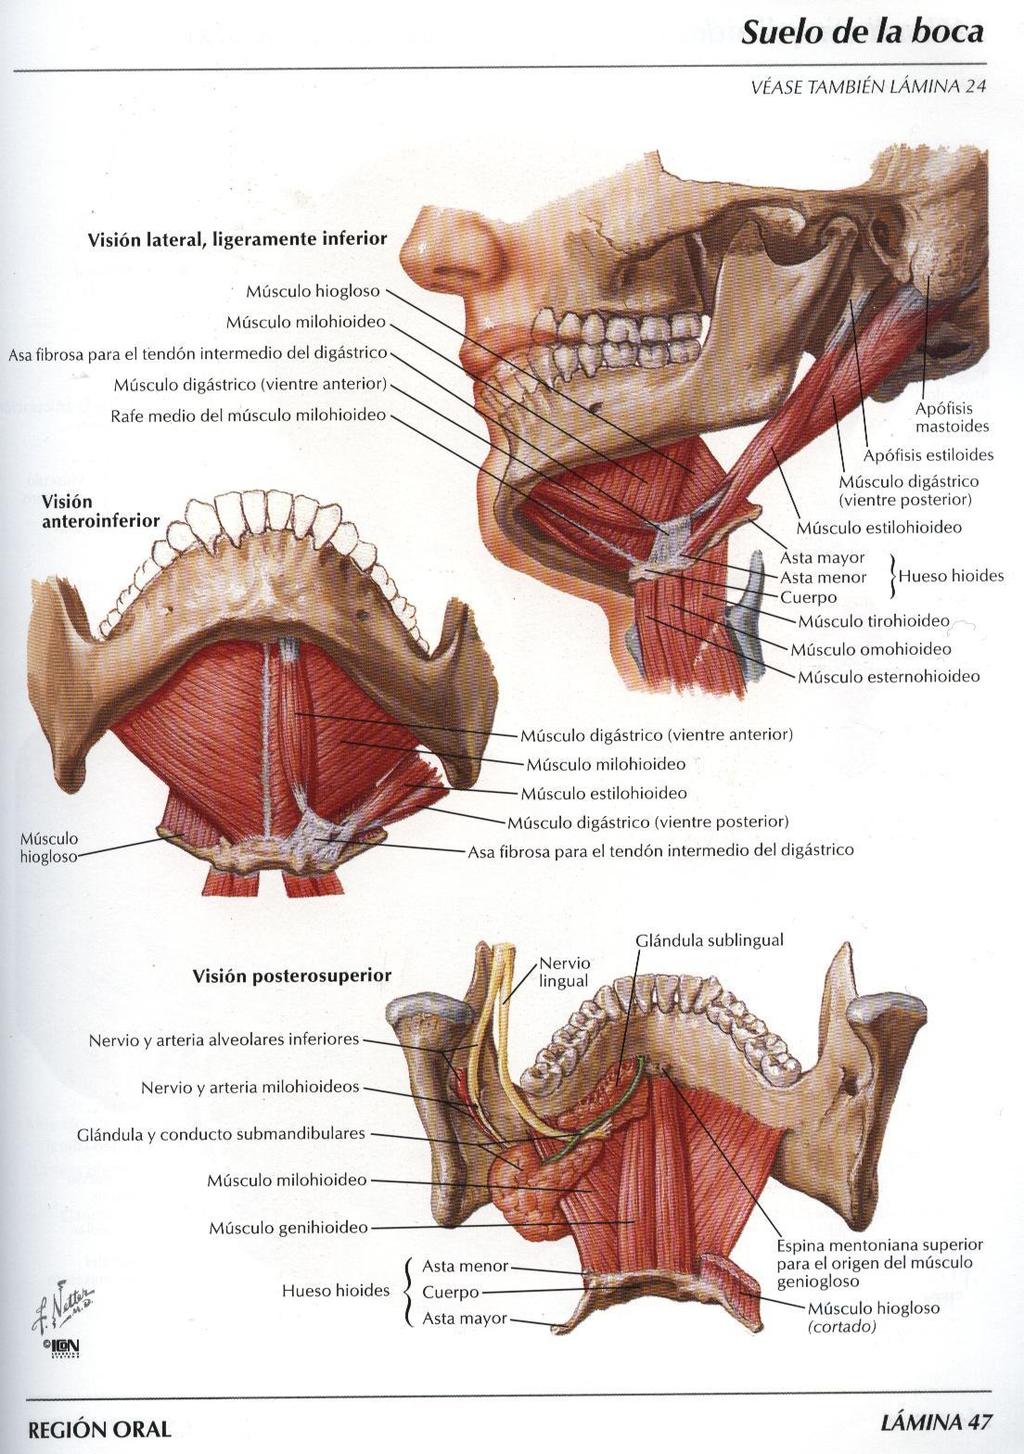 Fibre simpatiche per la parotide originano dal ganglio cervicale superiore della catena paravertebrale e si portano alla ghiandola lungo il plesso che si forma attorno alle arterie carotide esterna e